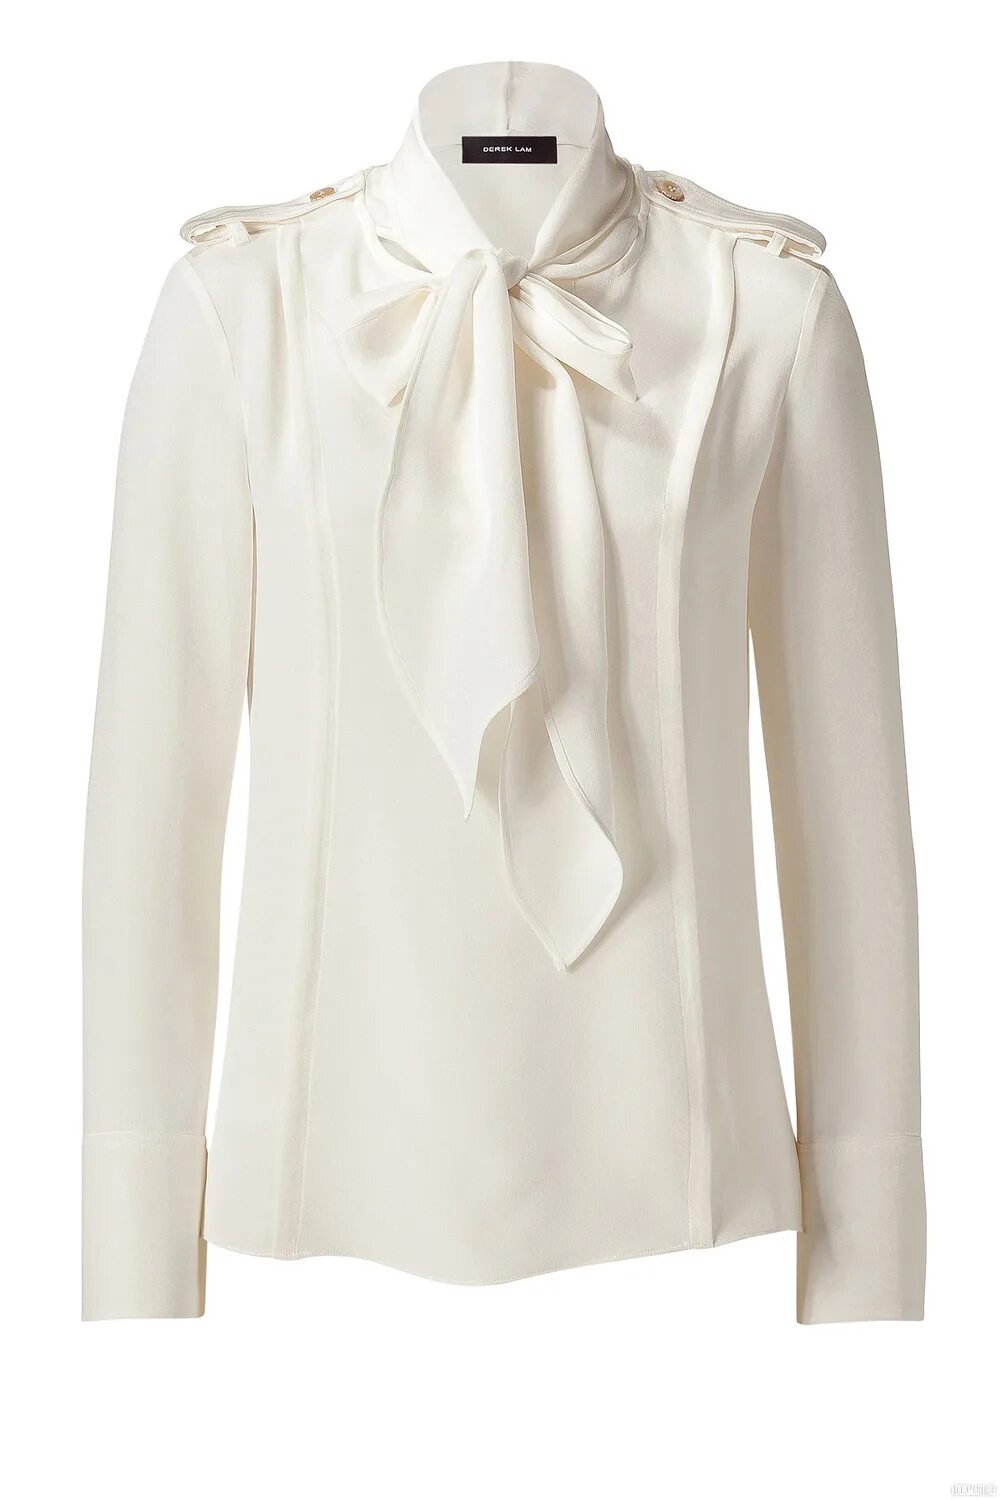 Sinequanone блузка шелковая. Блузка с воротником стоечка. Блуза с воротник бант. Белая блузка женская.